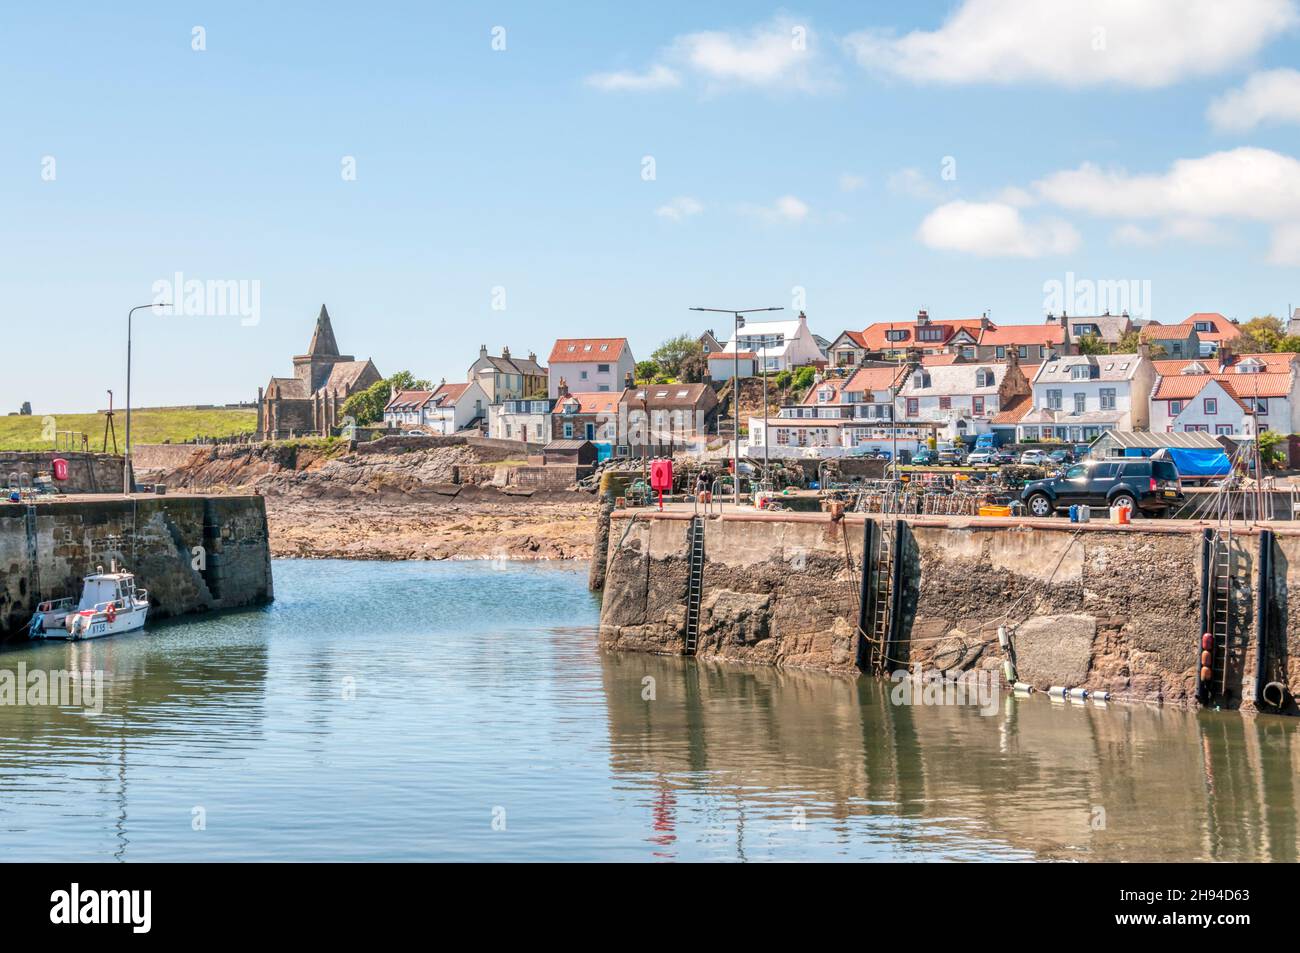 Le pittoresque village de bord de mer de St Monans dans le Neuk est de Fife, en Écosse, vu de l'autre côté de l'entrée du port. Banque D'Images